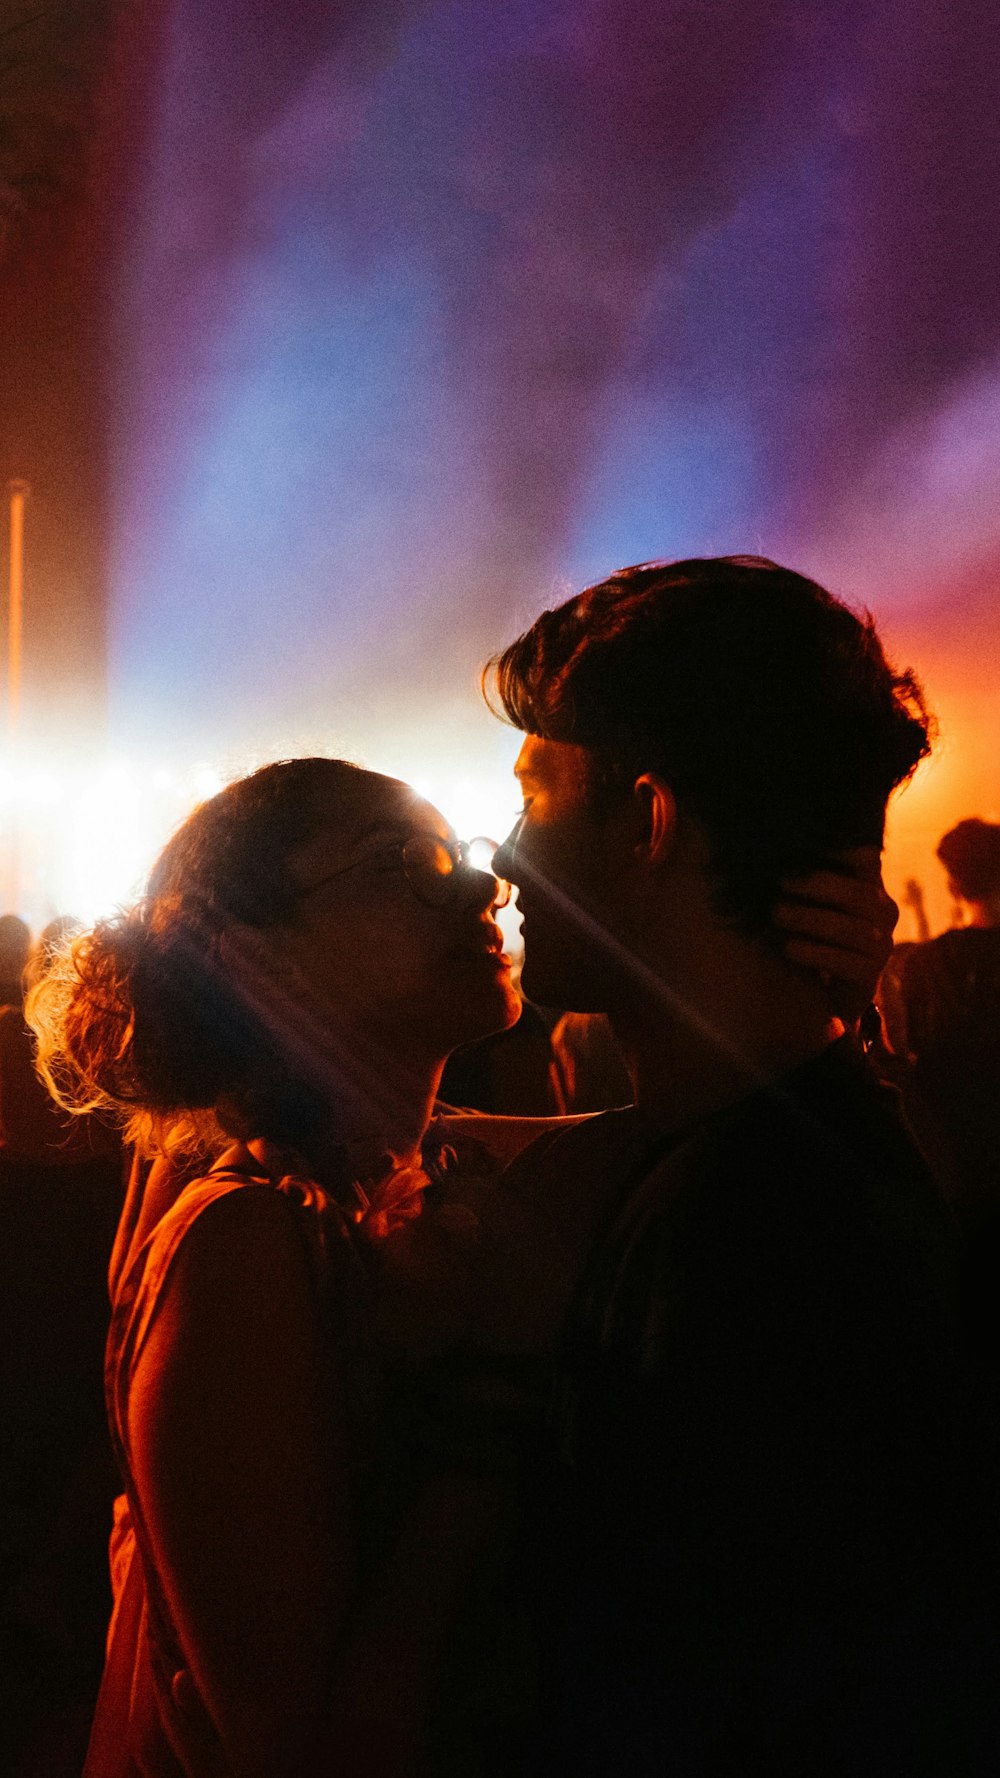 homme et femme s’embrassent pendant la nuit